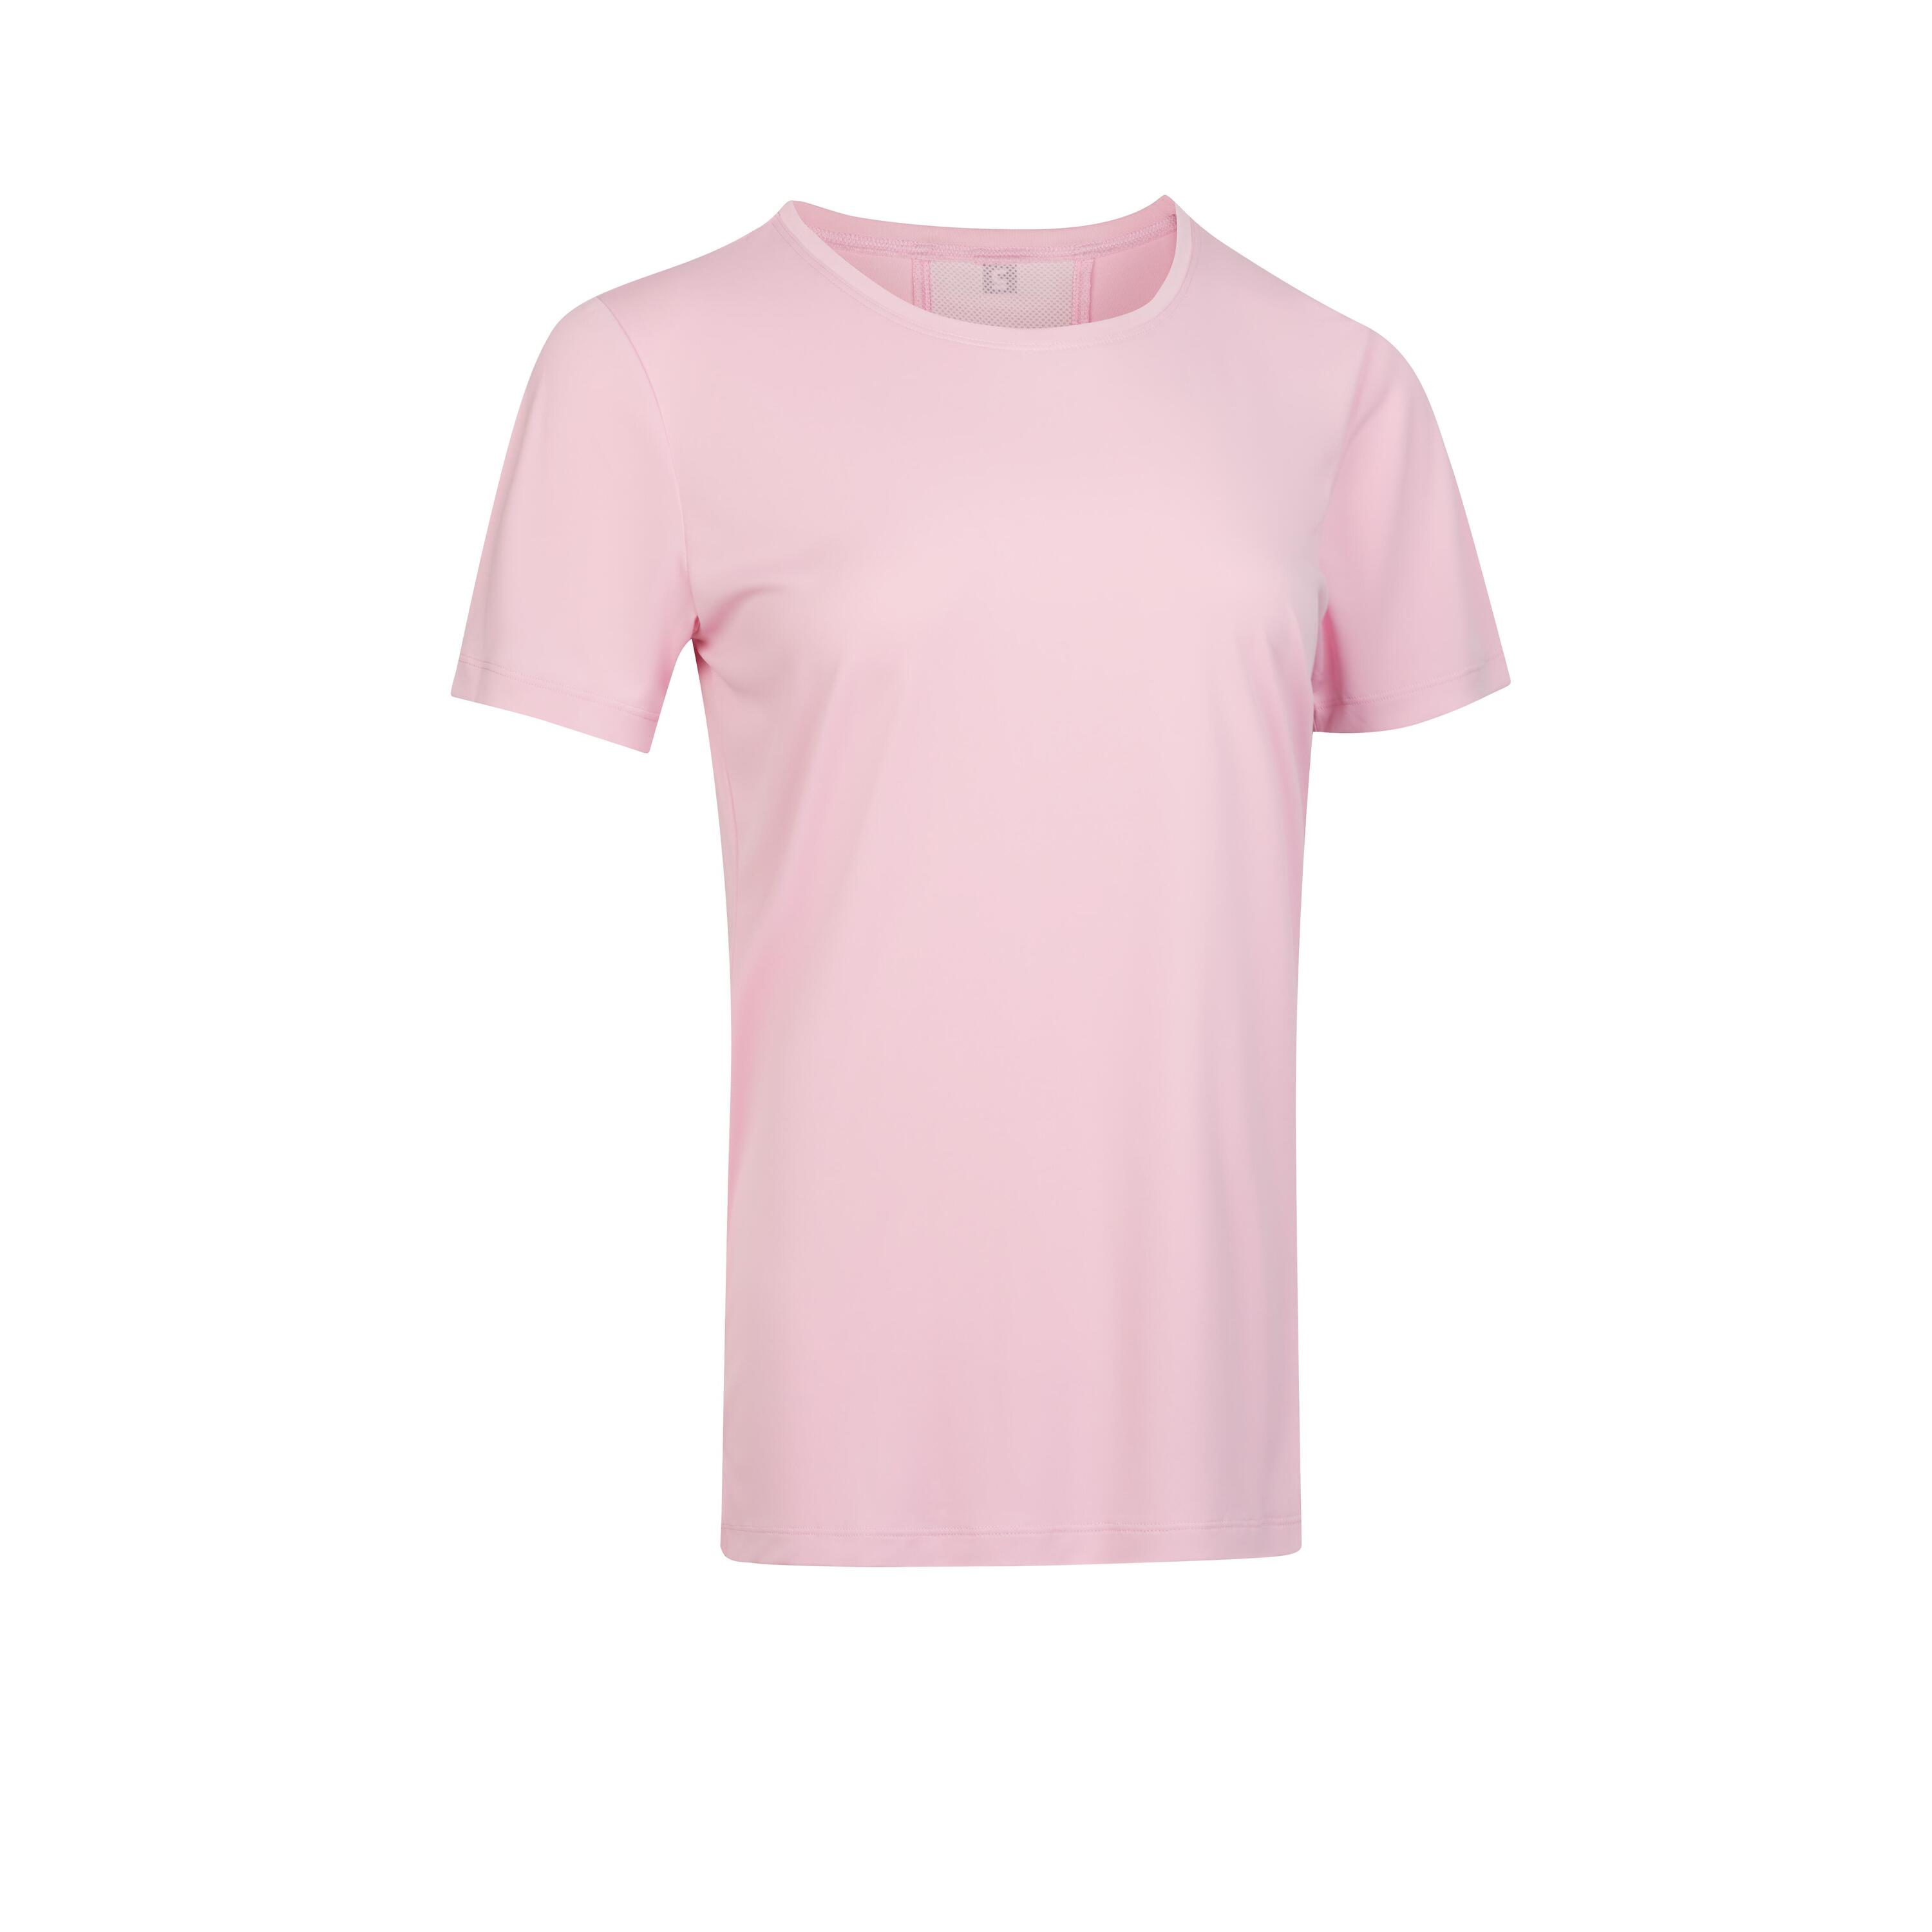 Women's Short-Sleeved Cardio Fitness T-Shirt - Light Pink 6/6